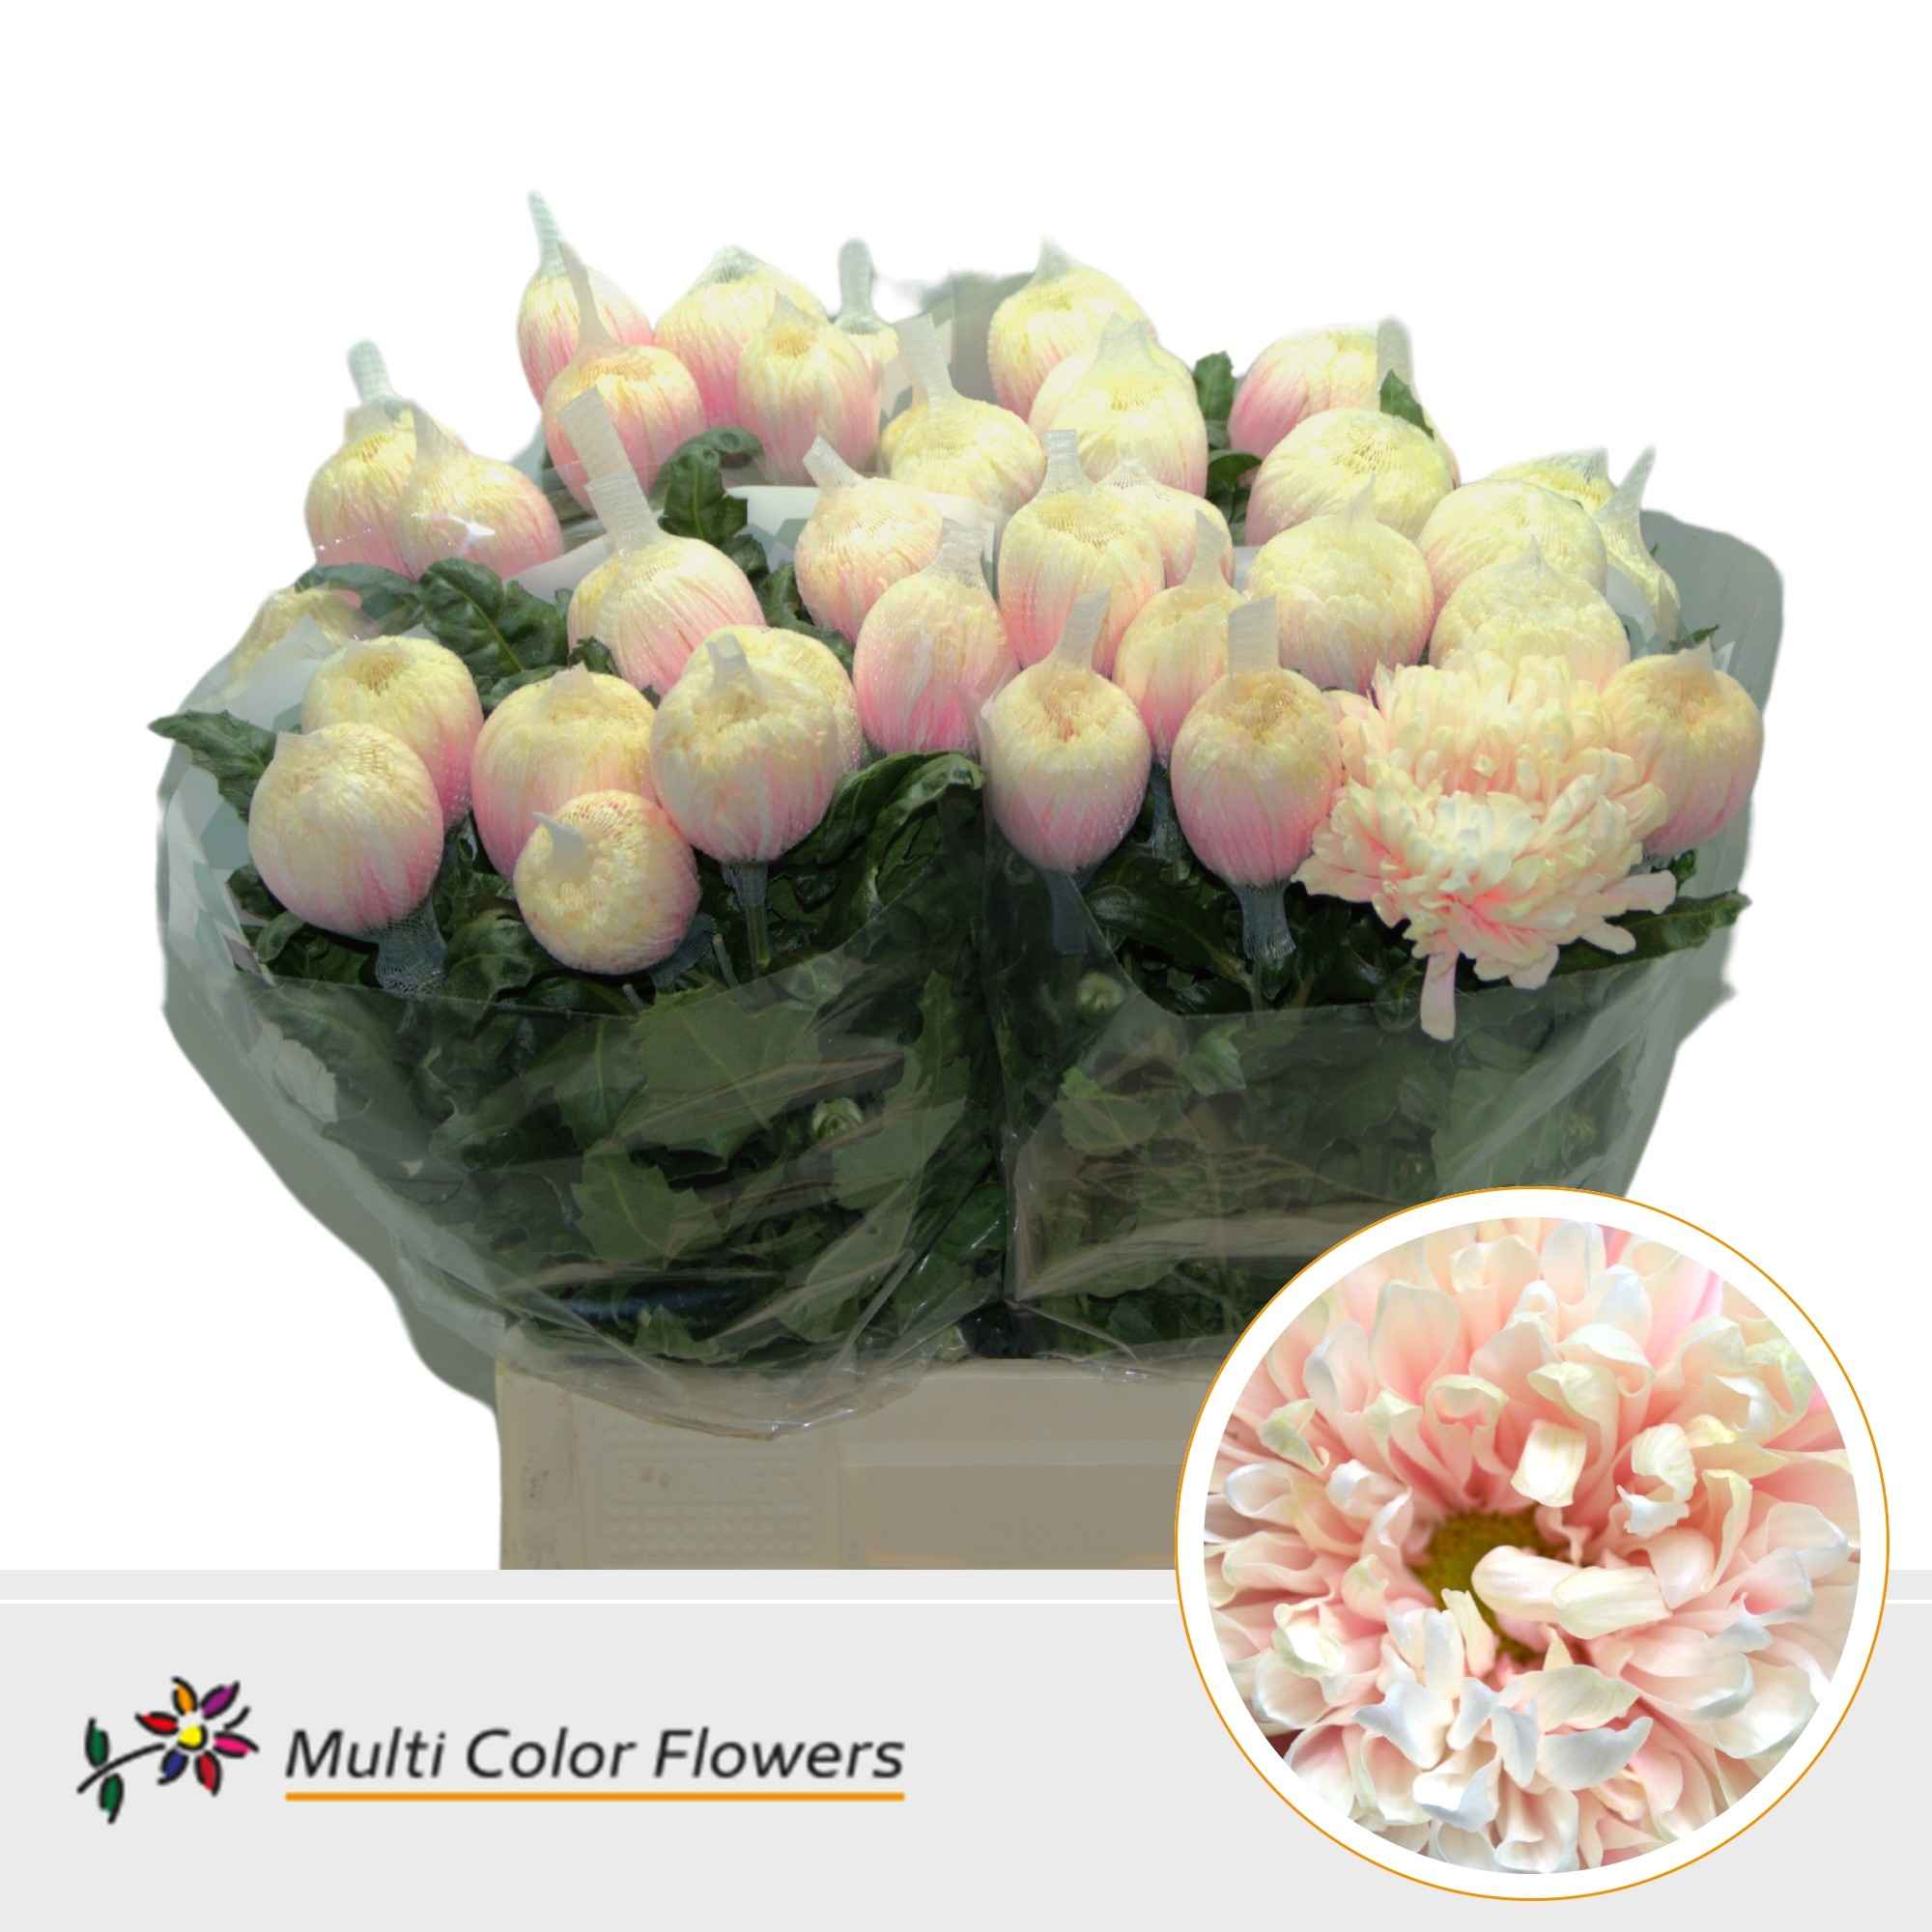 Срезанные цветы оптом Chrys bl paint antonov soft peach от 40шт из Голландии с доставкой по России